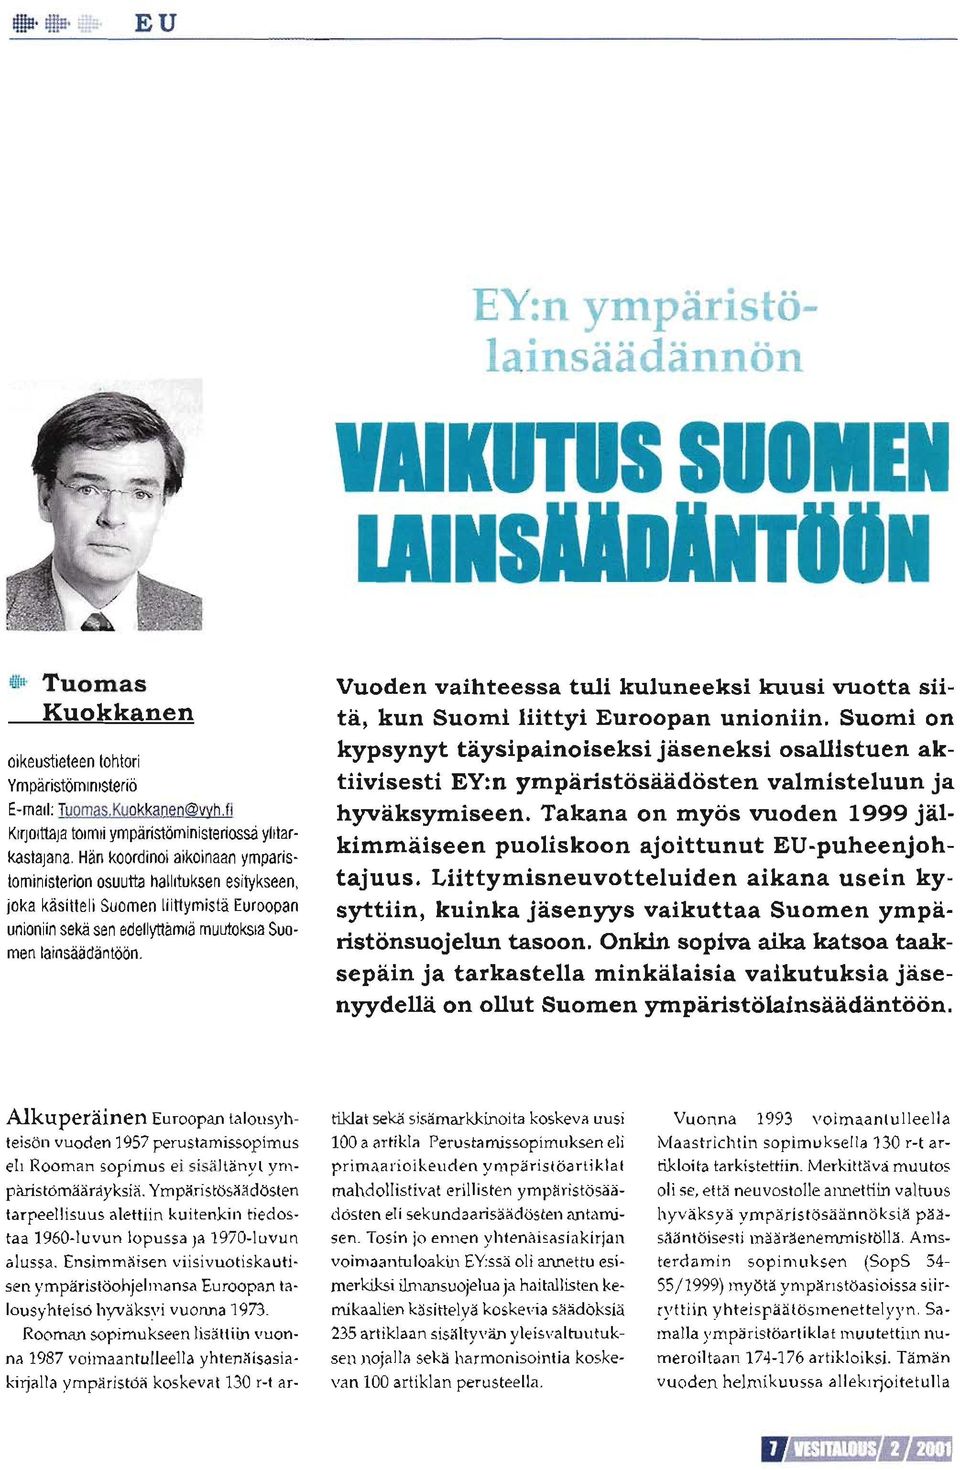 Hän koordinoi aikoinaan ympäristöministeriön osuutta hallituksen esitykseen, joka käsitteli Suomen liittymistä Euroopan unioniin sekä sen edellyttämiä muutoksia Suomen lainsäädäntöön.